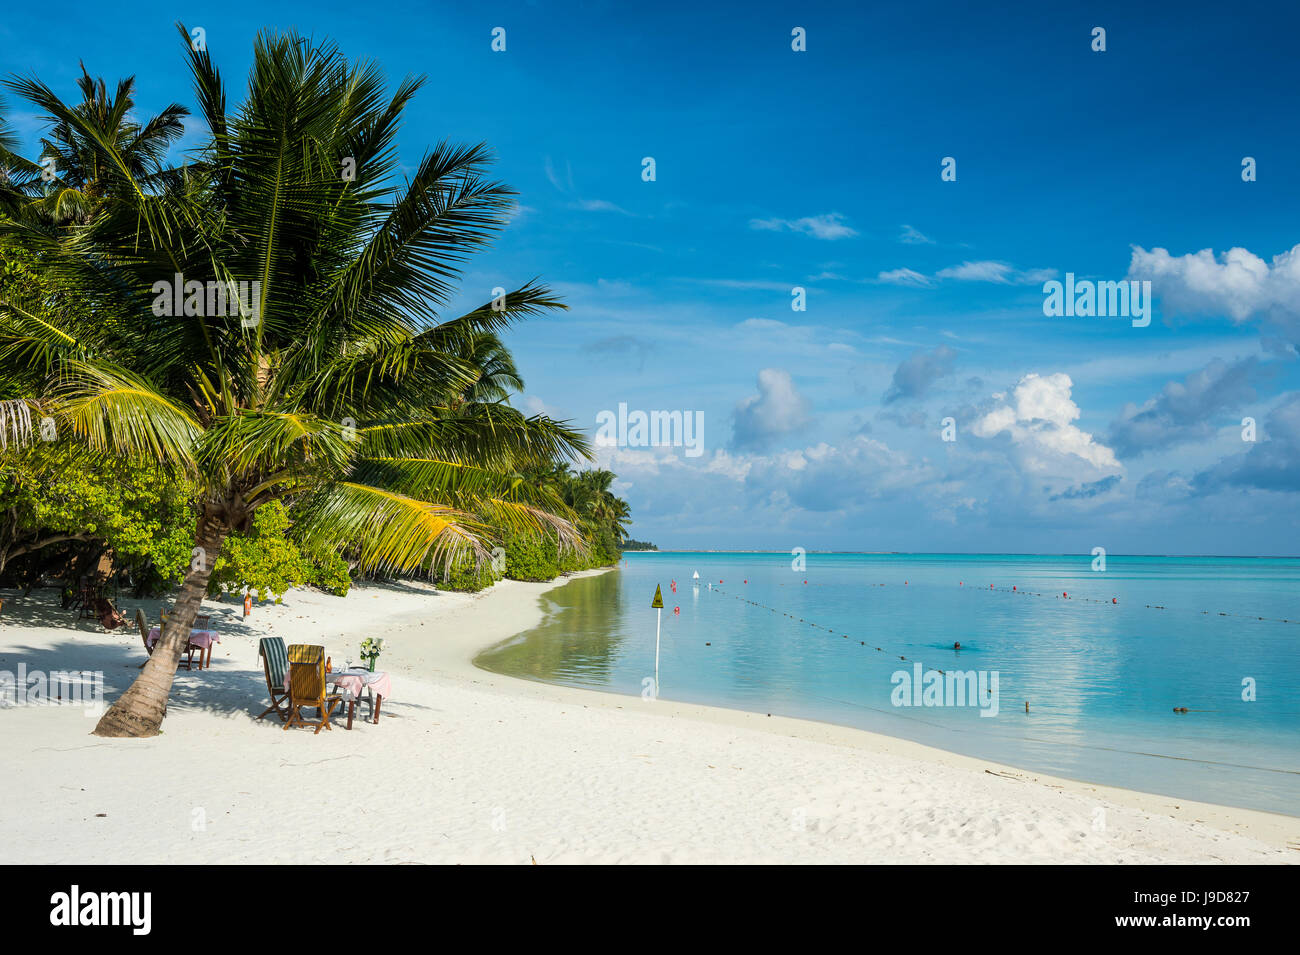 Plage de sable blanc et eau turquoise, Sun Island Resort, l'île de Dhiffushi, Ari atoll, Maldives, océan Indien, Asie Banque D'Images